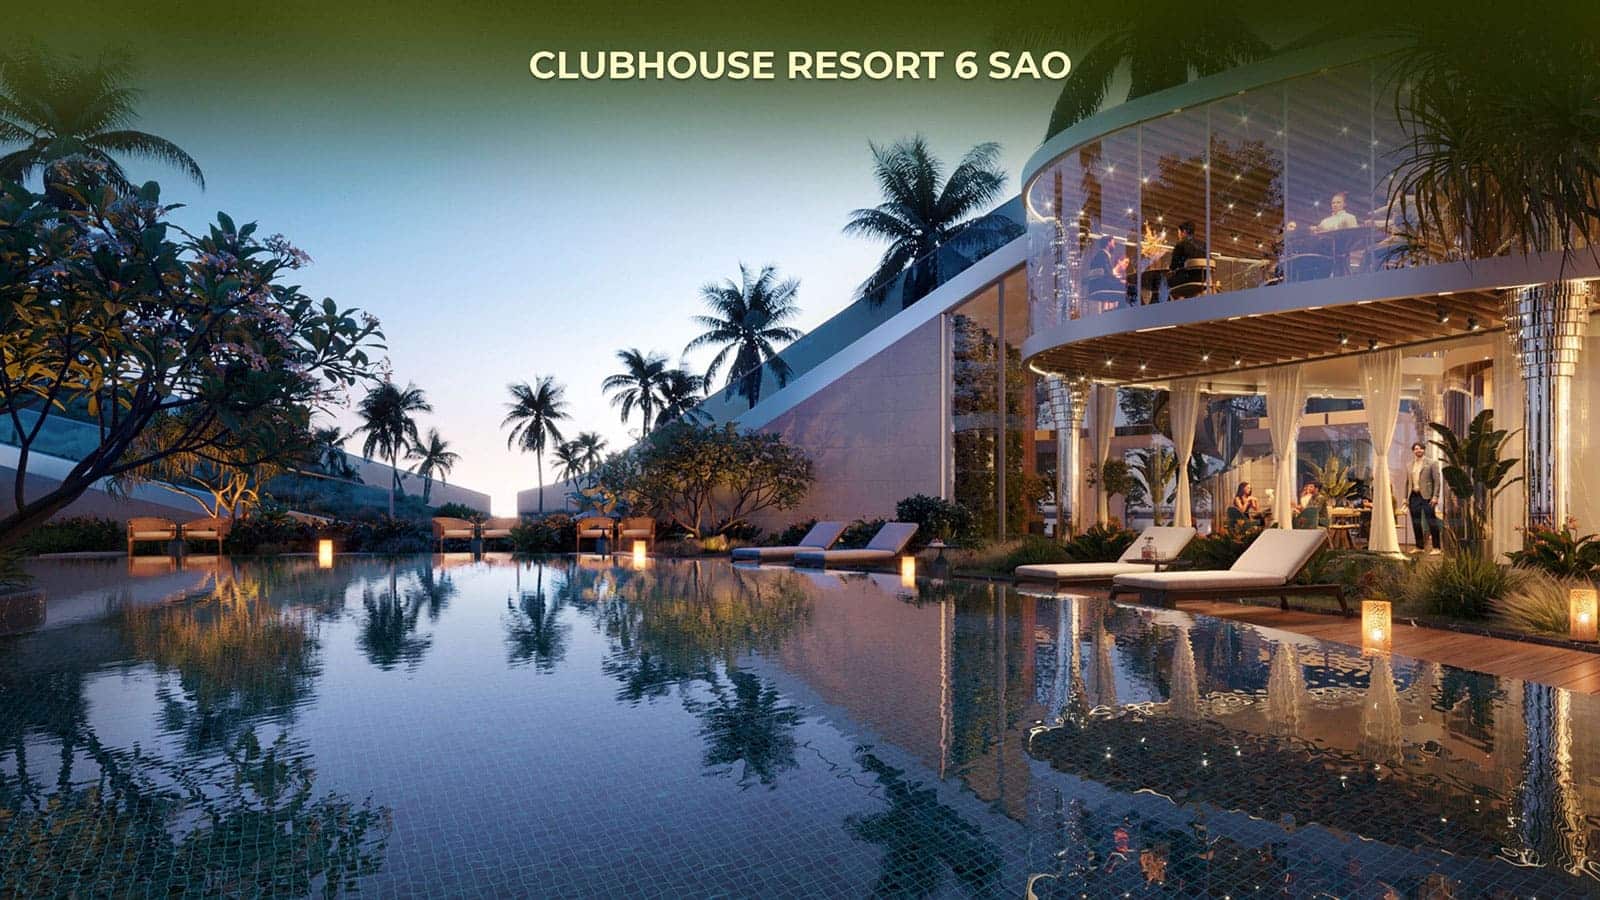 Clubhouse resort 6 sao dự án Eco Village Saigon River